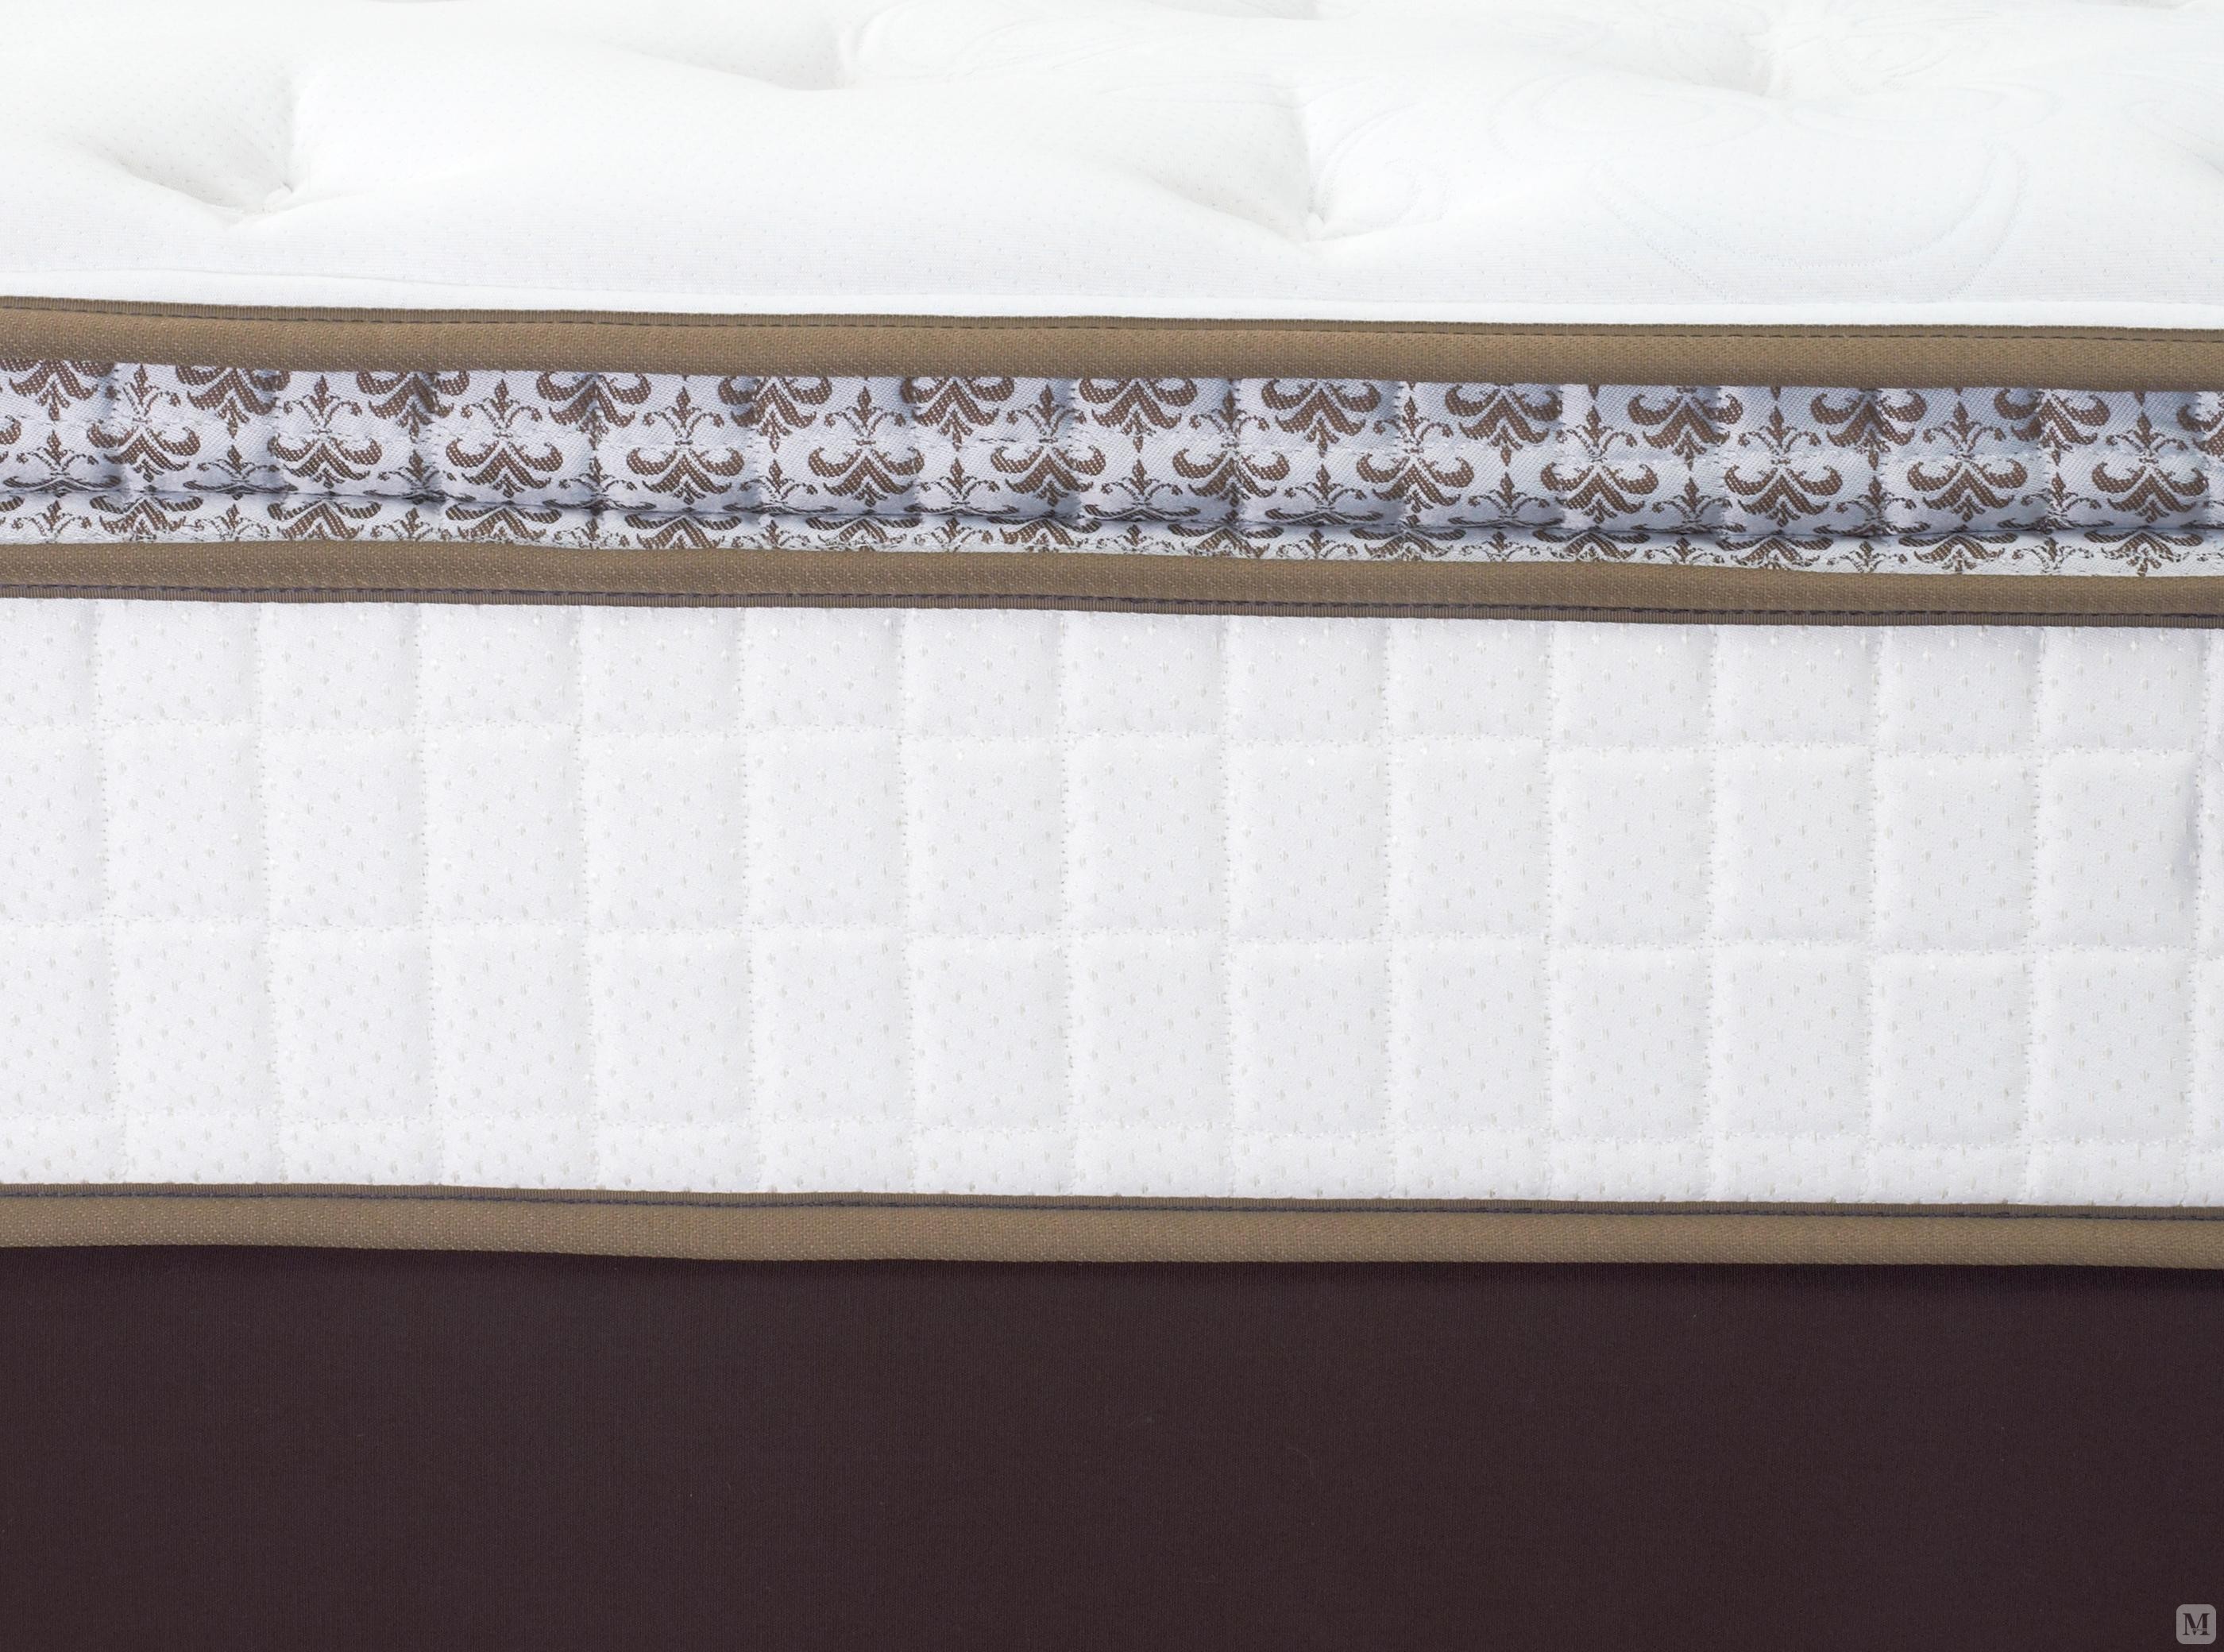 丝涟 床垫 钛合金智能美姿感应弹簧床垫  记忆棉床垫 丝涟1/3生活馆 18627